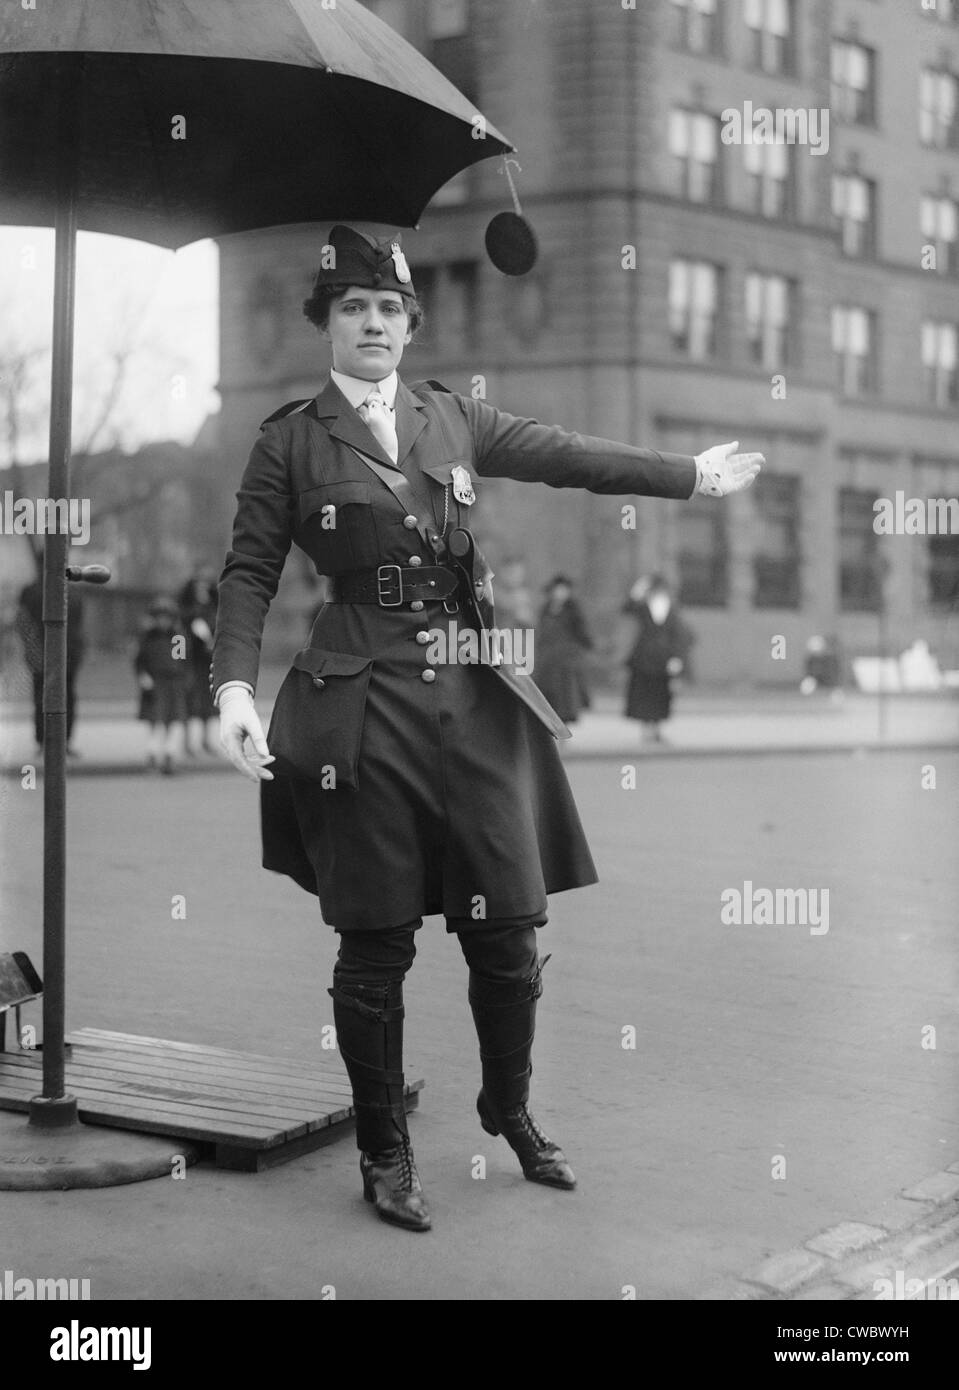 Policewoman directing traffic in Washington, D.C. in 1918. Her progressive uniform combines knee high boots, below knee pants, Stock Photo